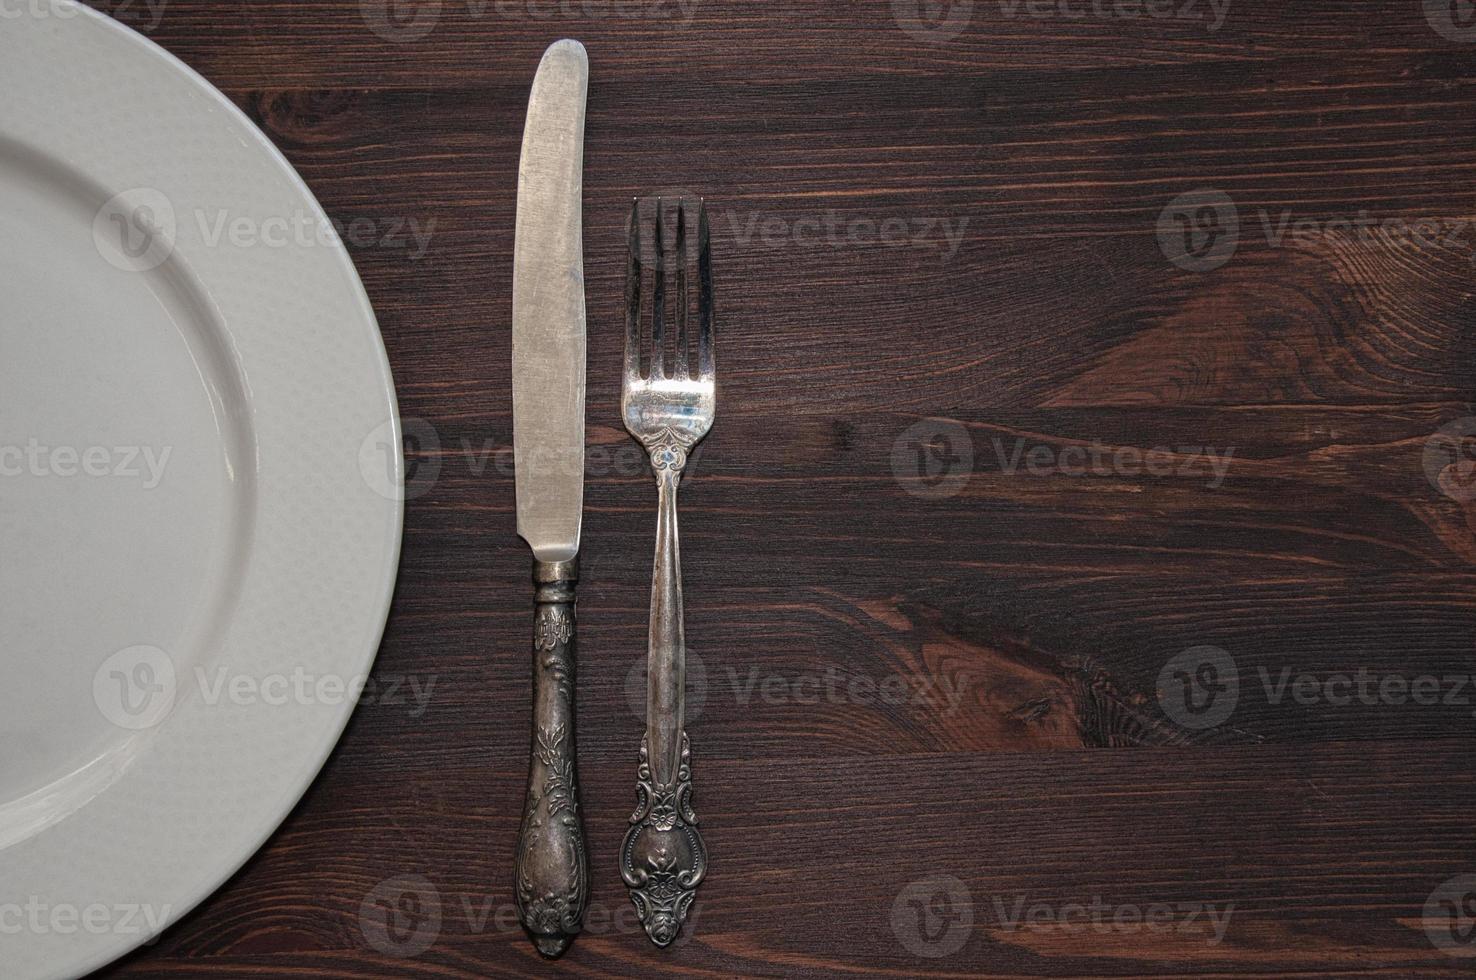 metade de um prato branco vazio com garfo e faca sobre uma mesa marrom foto